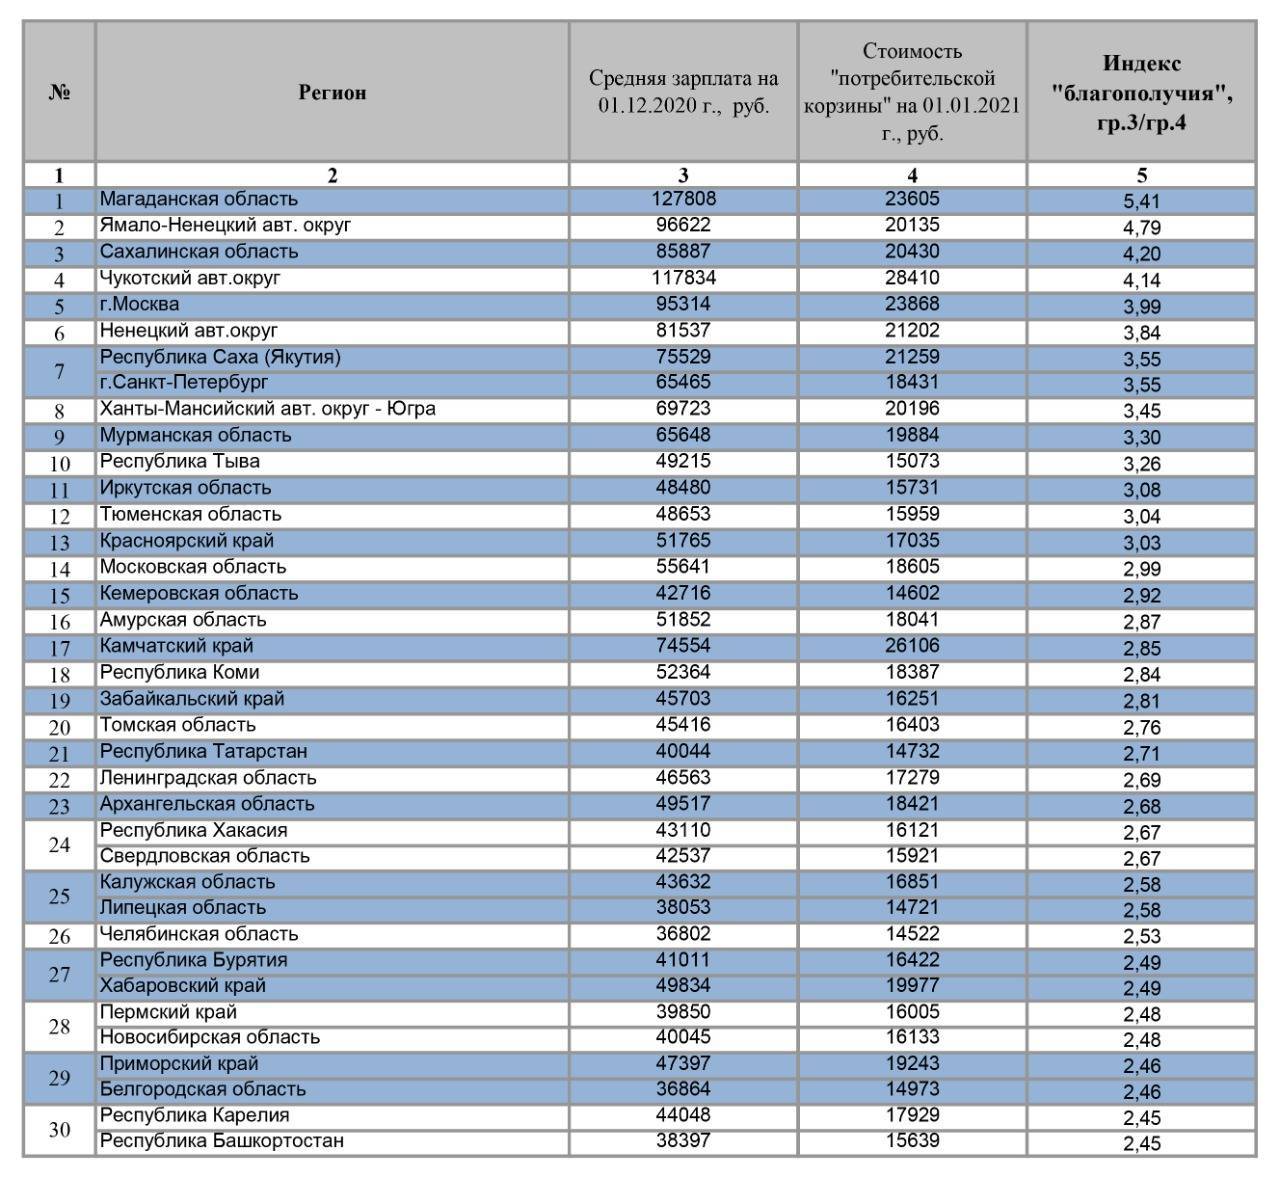 Сколько составляют средние зарплаты в россии? какая средняя зарплата в разных регионах россии? :: syl.ru